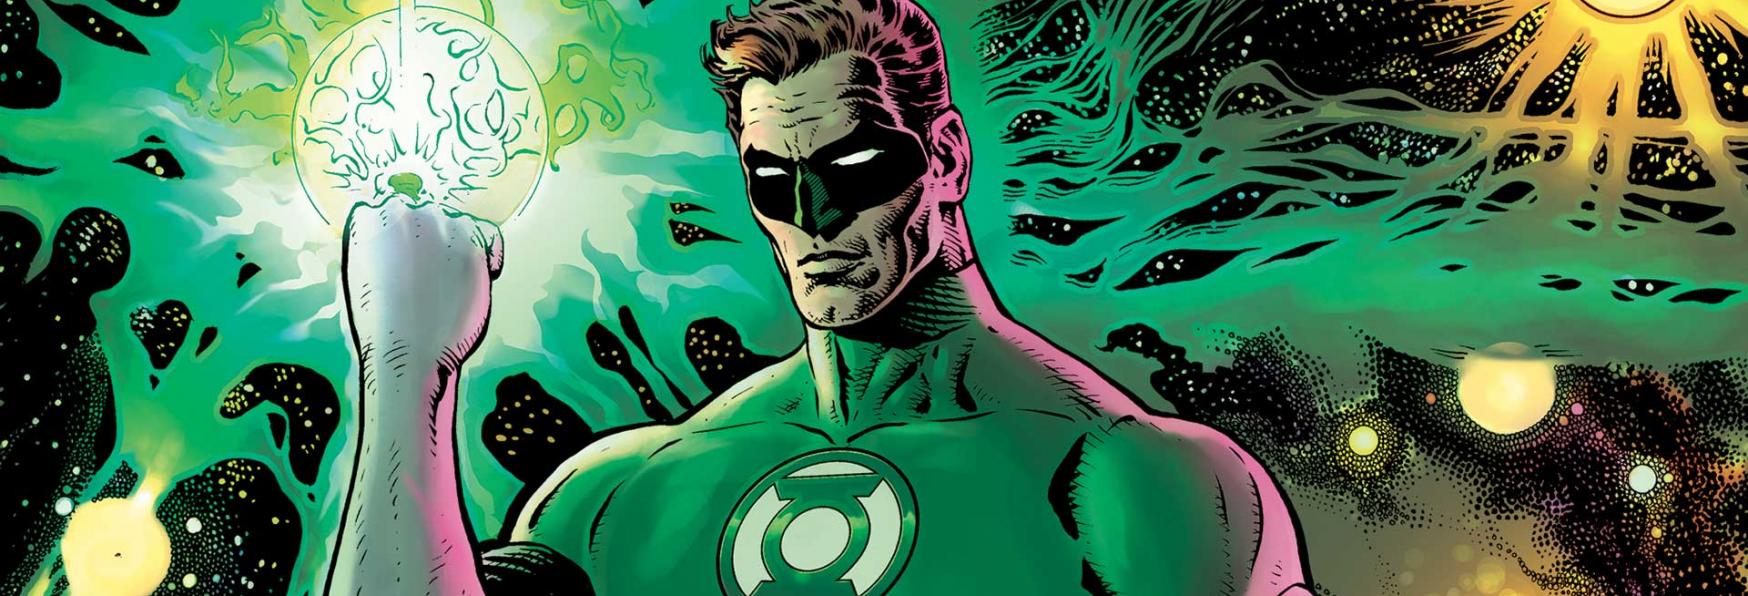 Green Lantern: Sinestro comparirà nella nuova Serie TV targata HBO Max